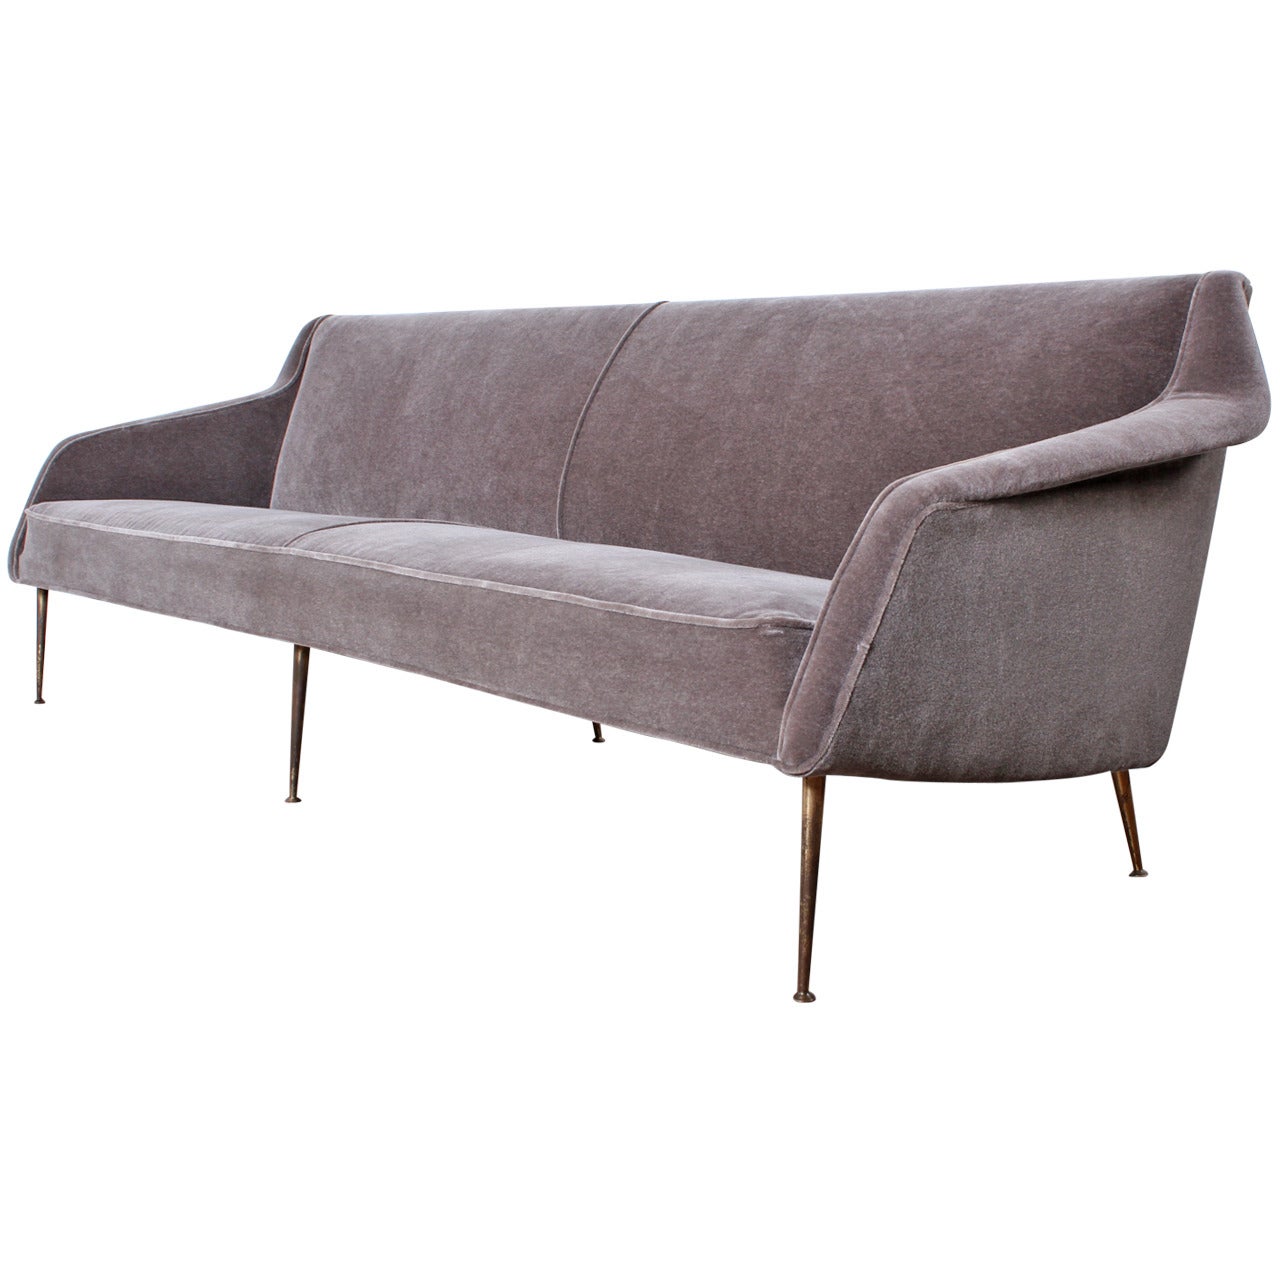 Sofa Designed by Carlo di Carli